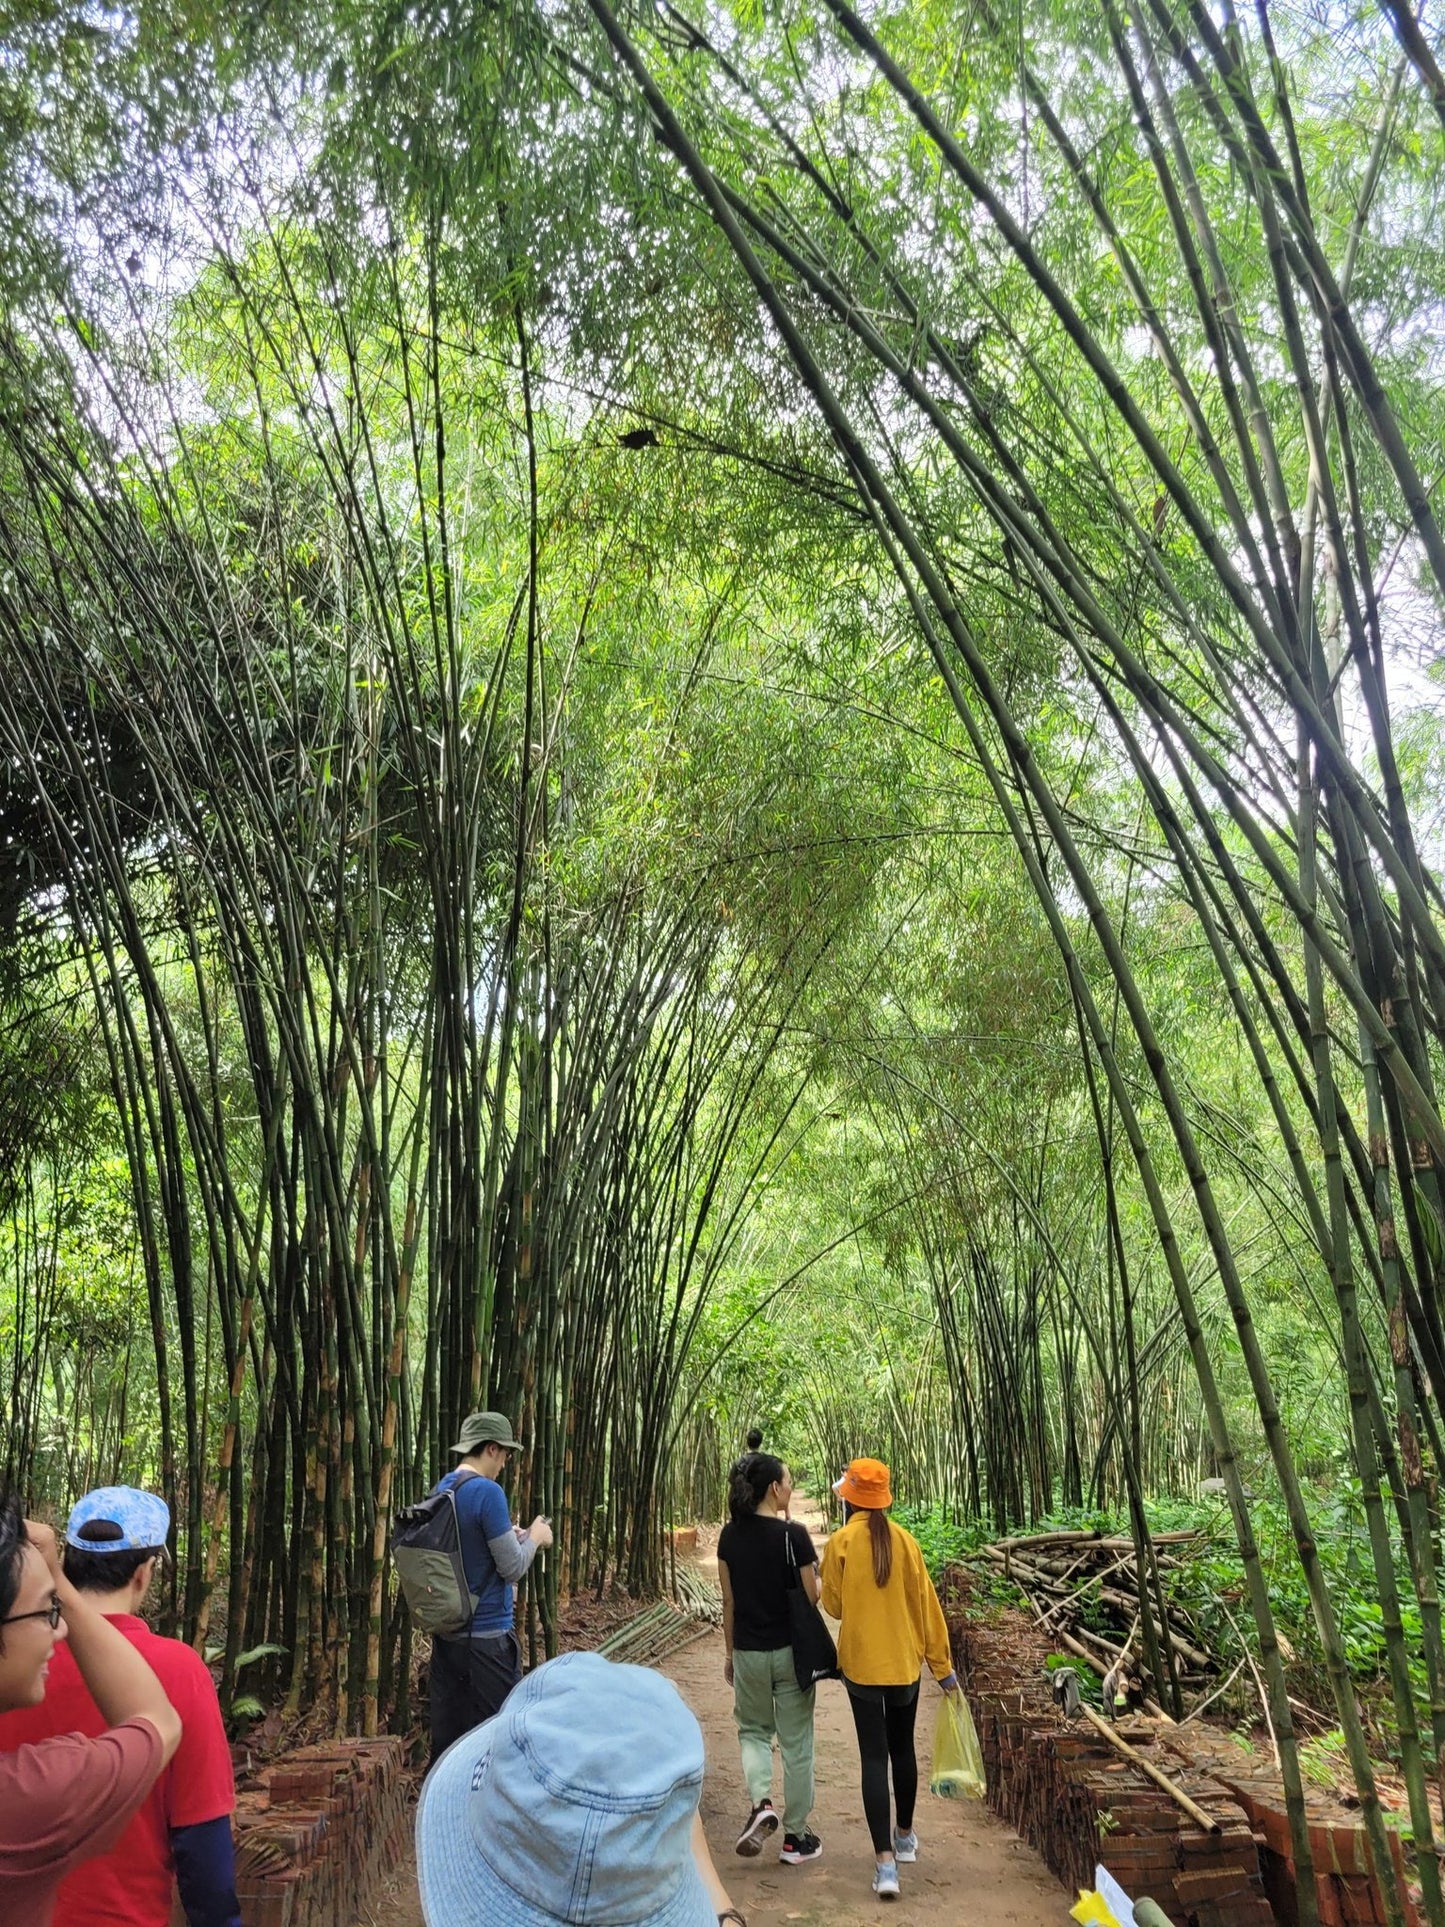 75A: Bamboo Village: perdido en el tranquilo campo